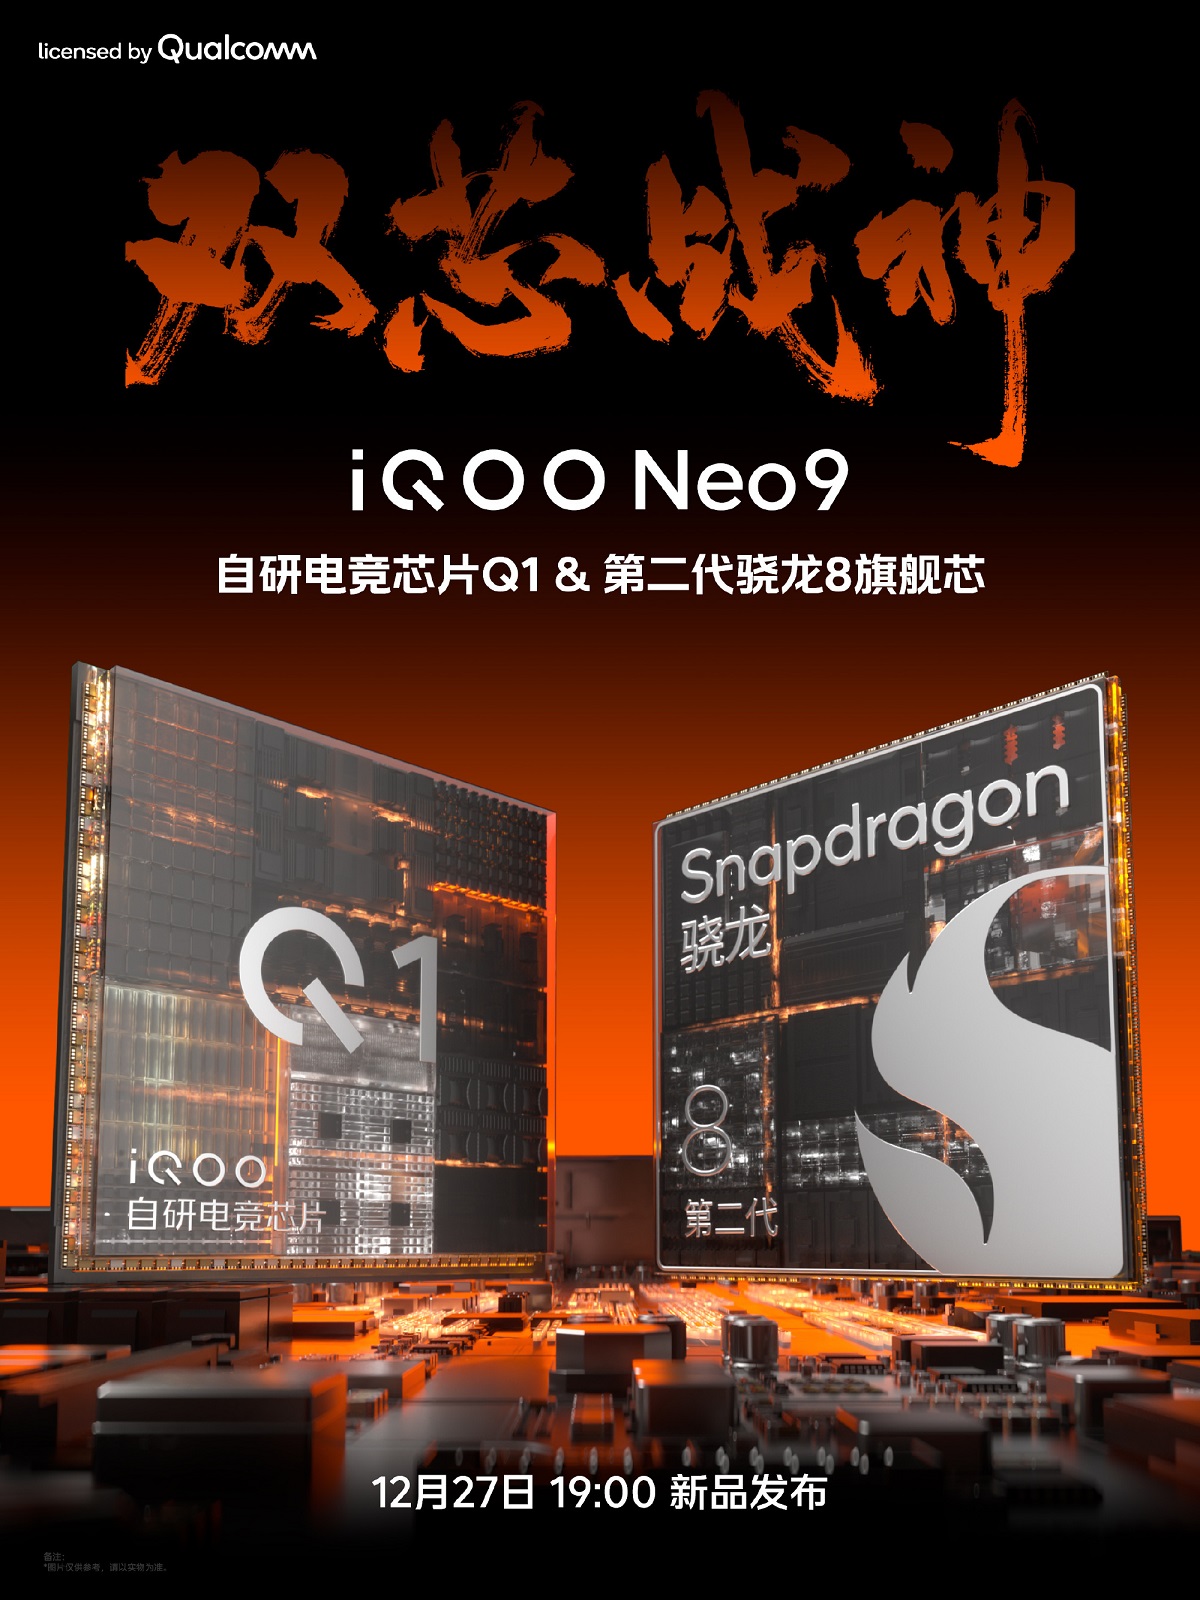 смартфон iQOO Neo9